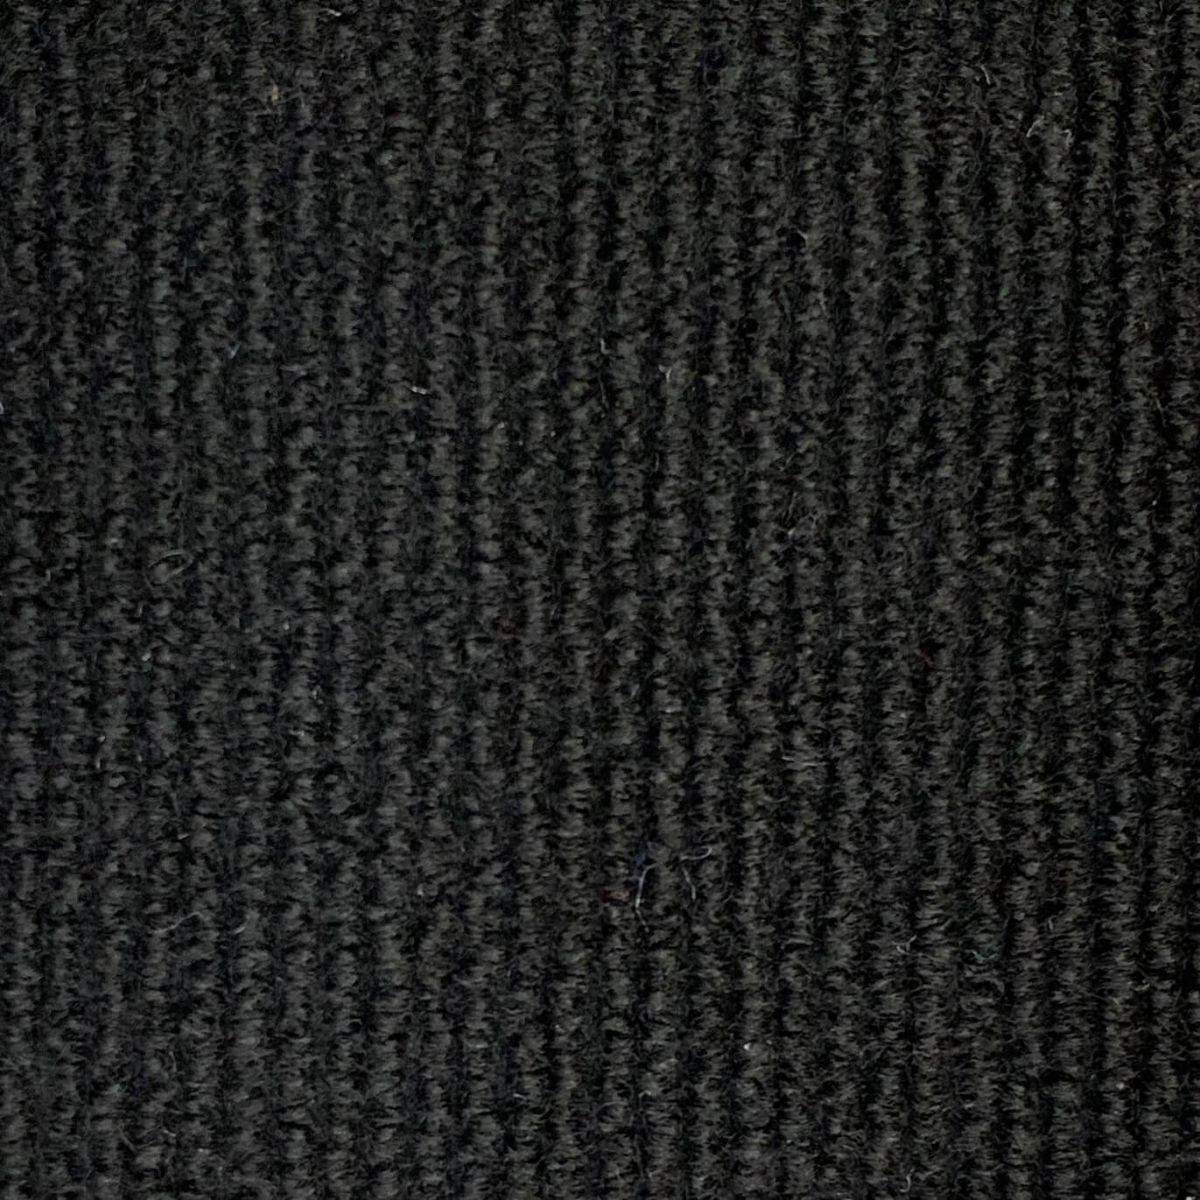 ФЛОРТ-ЭКСПО выставочный ковролин черный (2м) (100 кв.м.) / FLOORT-EXPO 01019 ковролин коммерческий выставочный черный (2